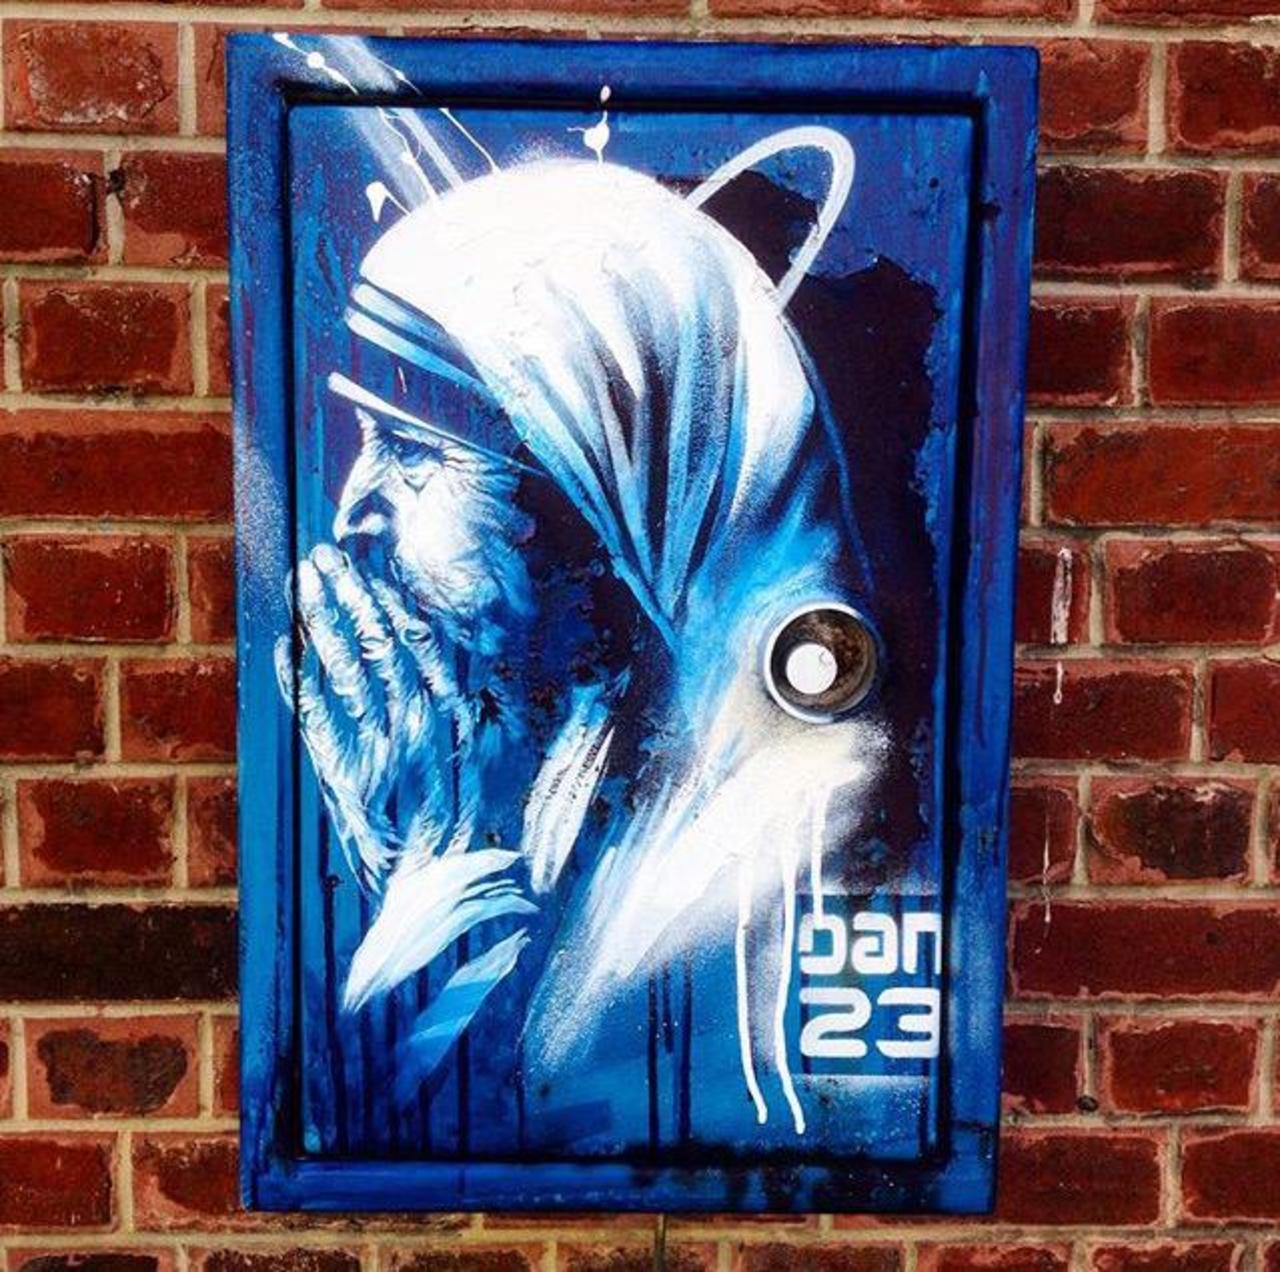 New Street Art 'Détail Spirit' by Dan23 

#art #graffiti #mural #streetart http://t.co/wX00hjCbFu